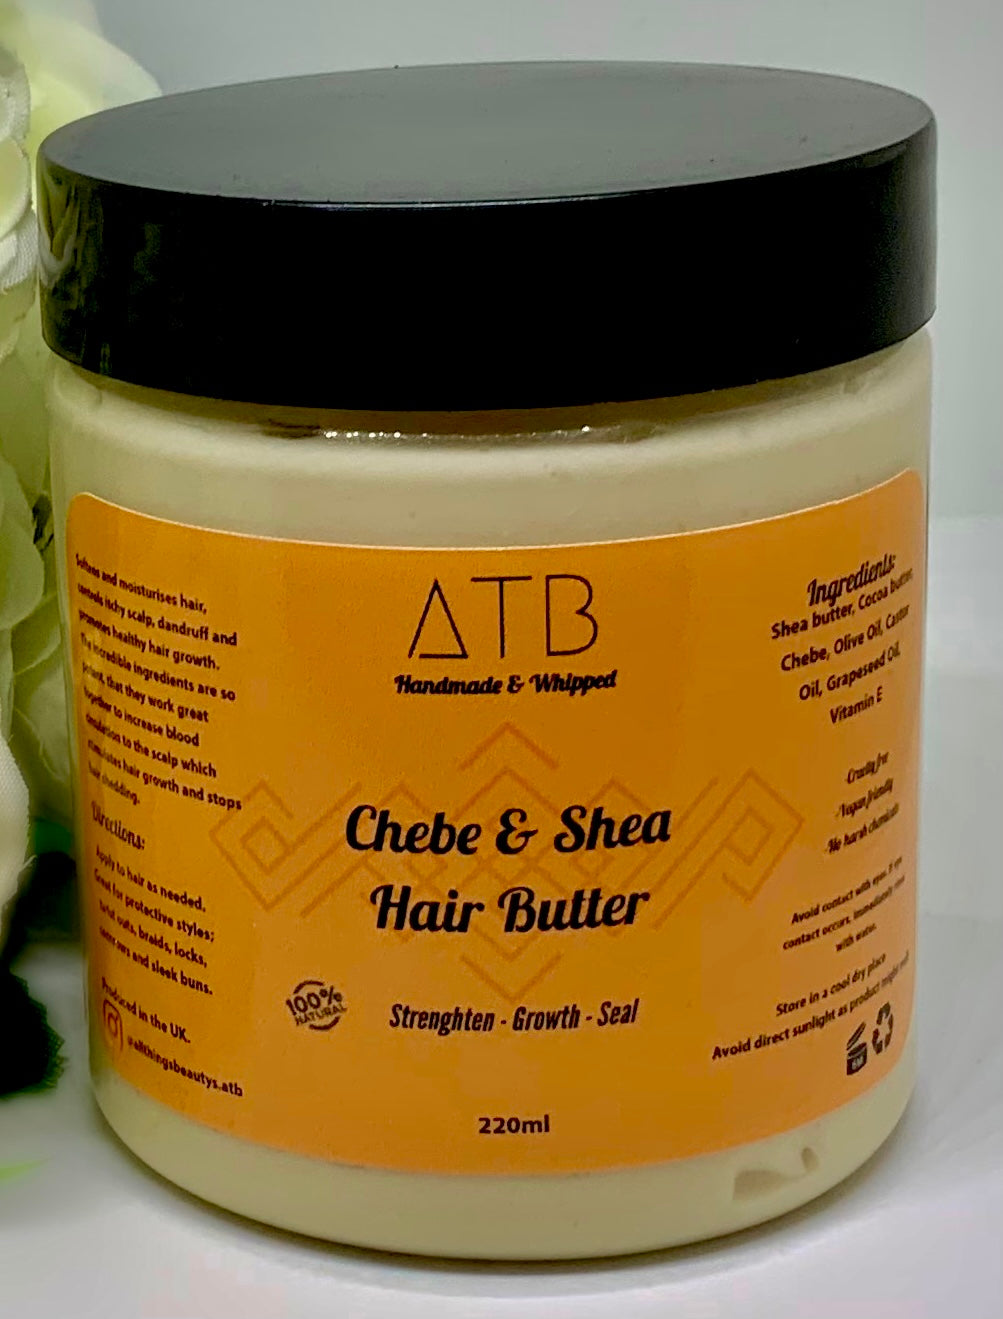 ATB Chebe & Shea Hair butter